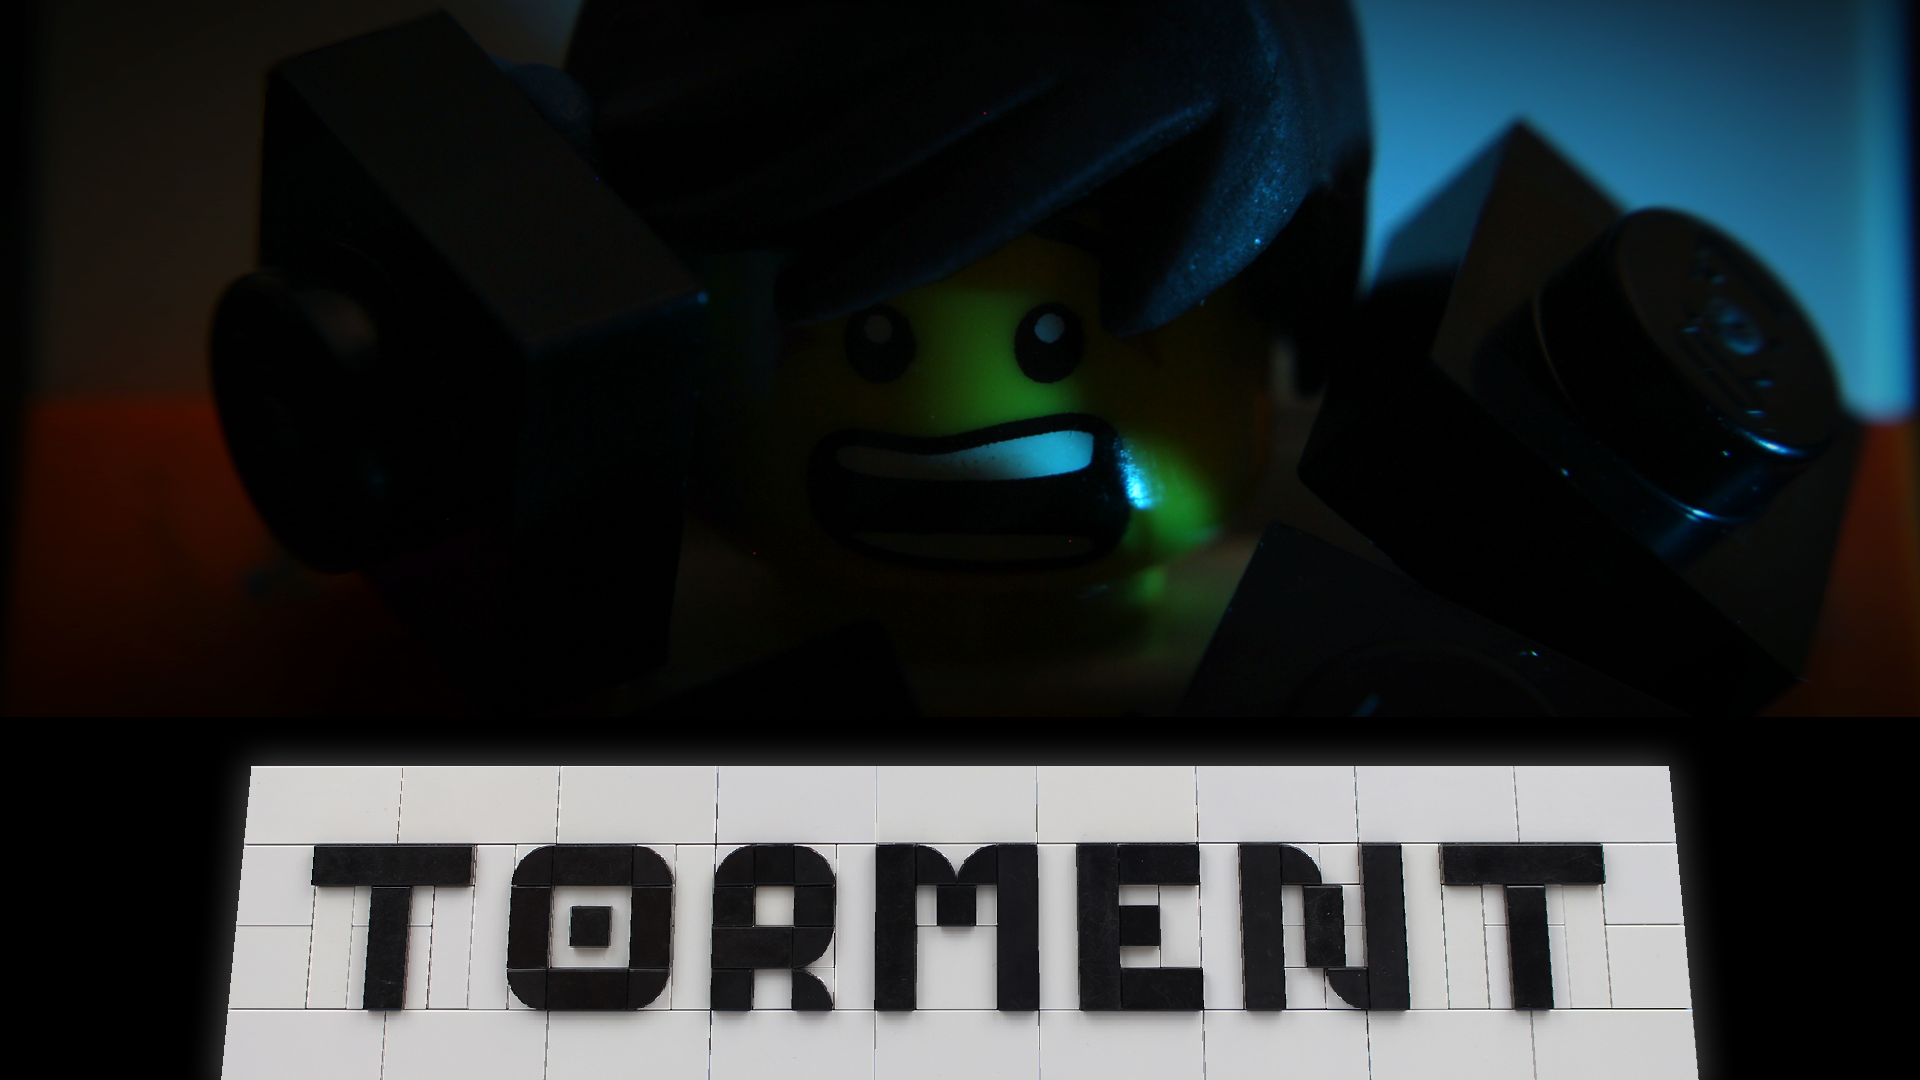 TORMENT- A LEGO Bullying Film